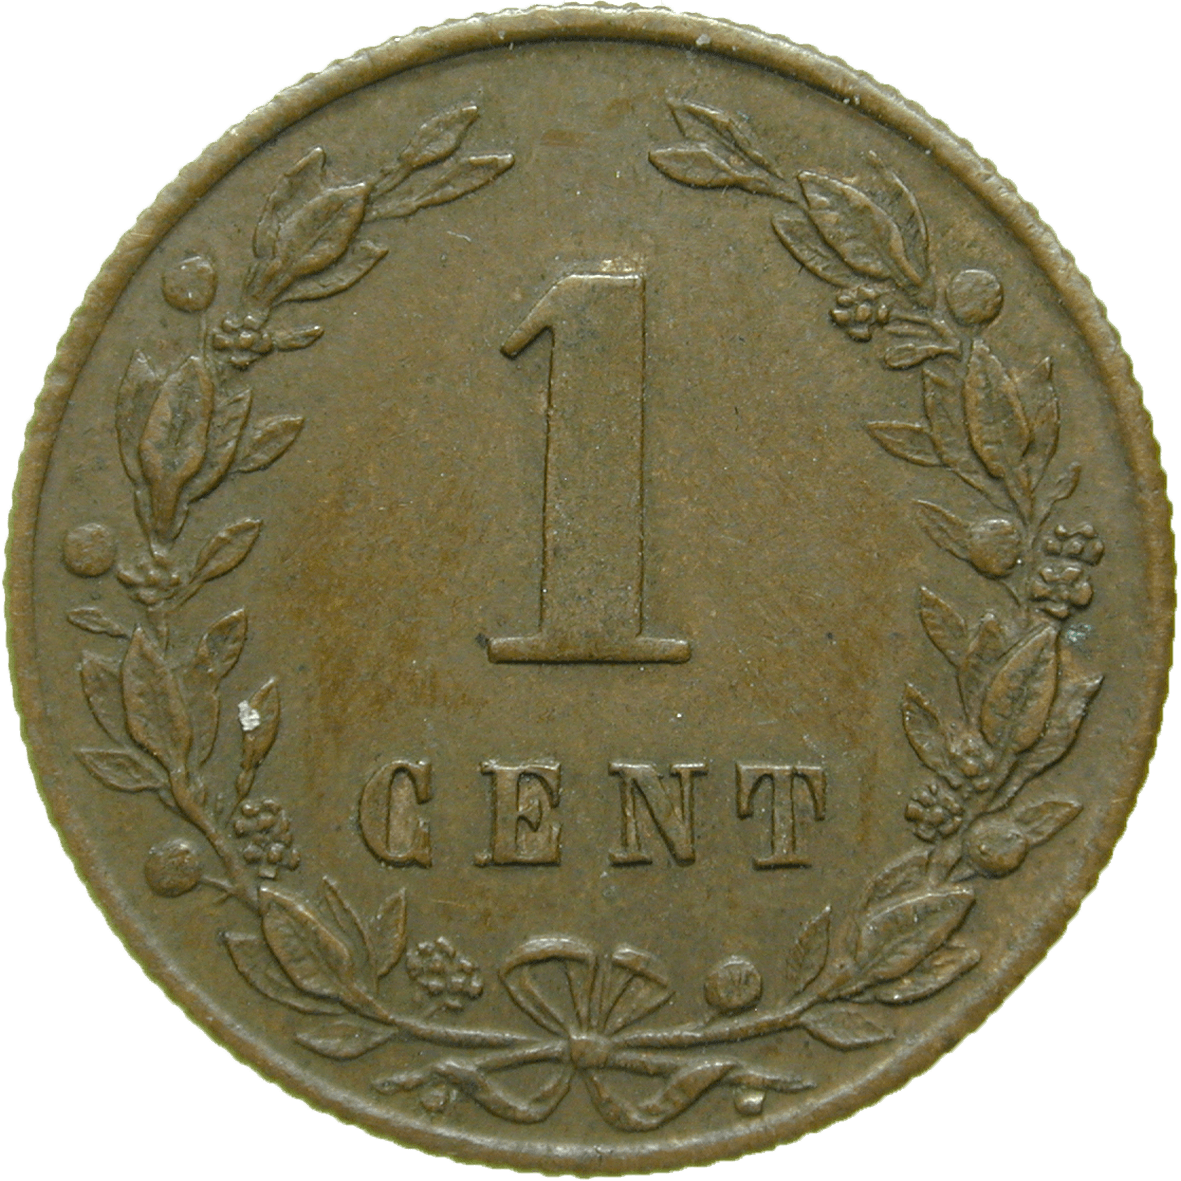 Königreich der Niederlande, Wilhelm III., 1 Cent 1881 (reverse)